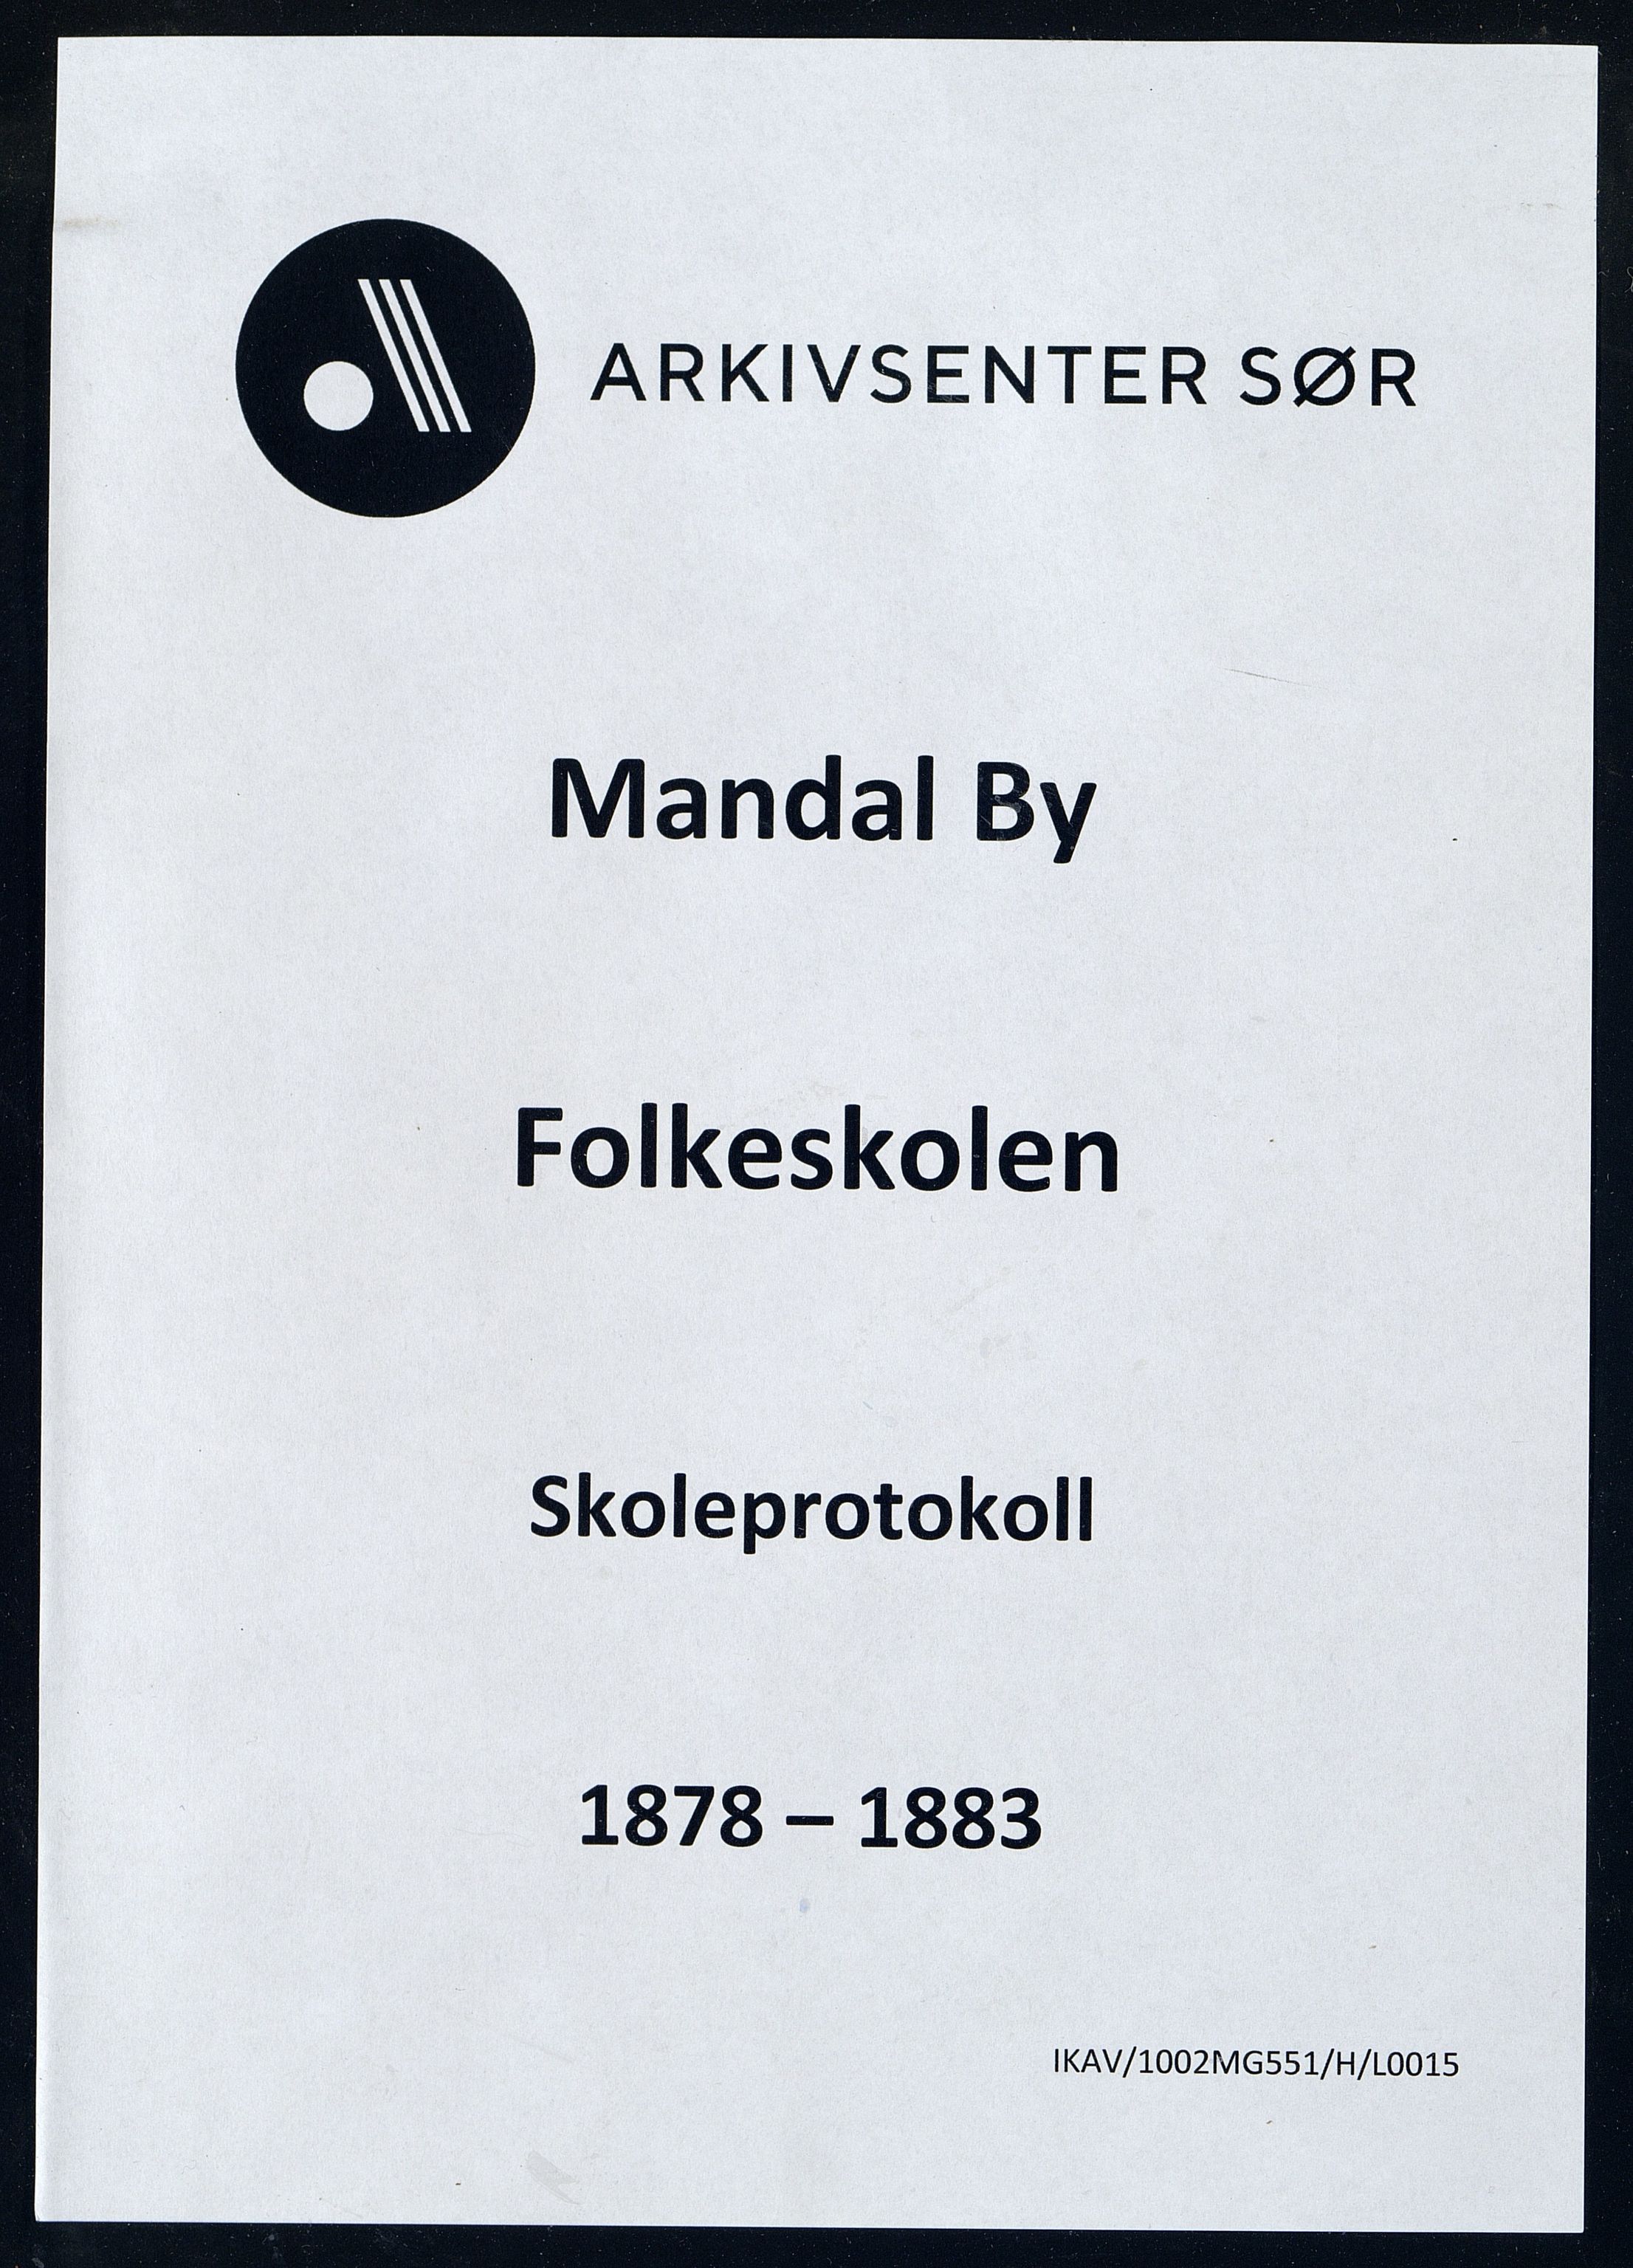 Mandal By - Mandal Allmueskole/Folkeskole/Skole, IKAV/1002MG551/H/L0015: Skoleprotokoll, 1878-1883